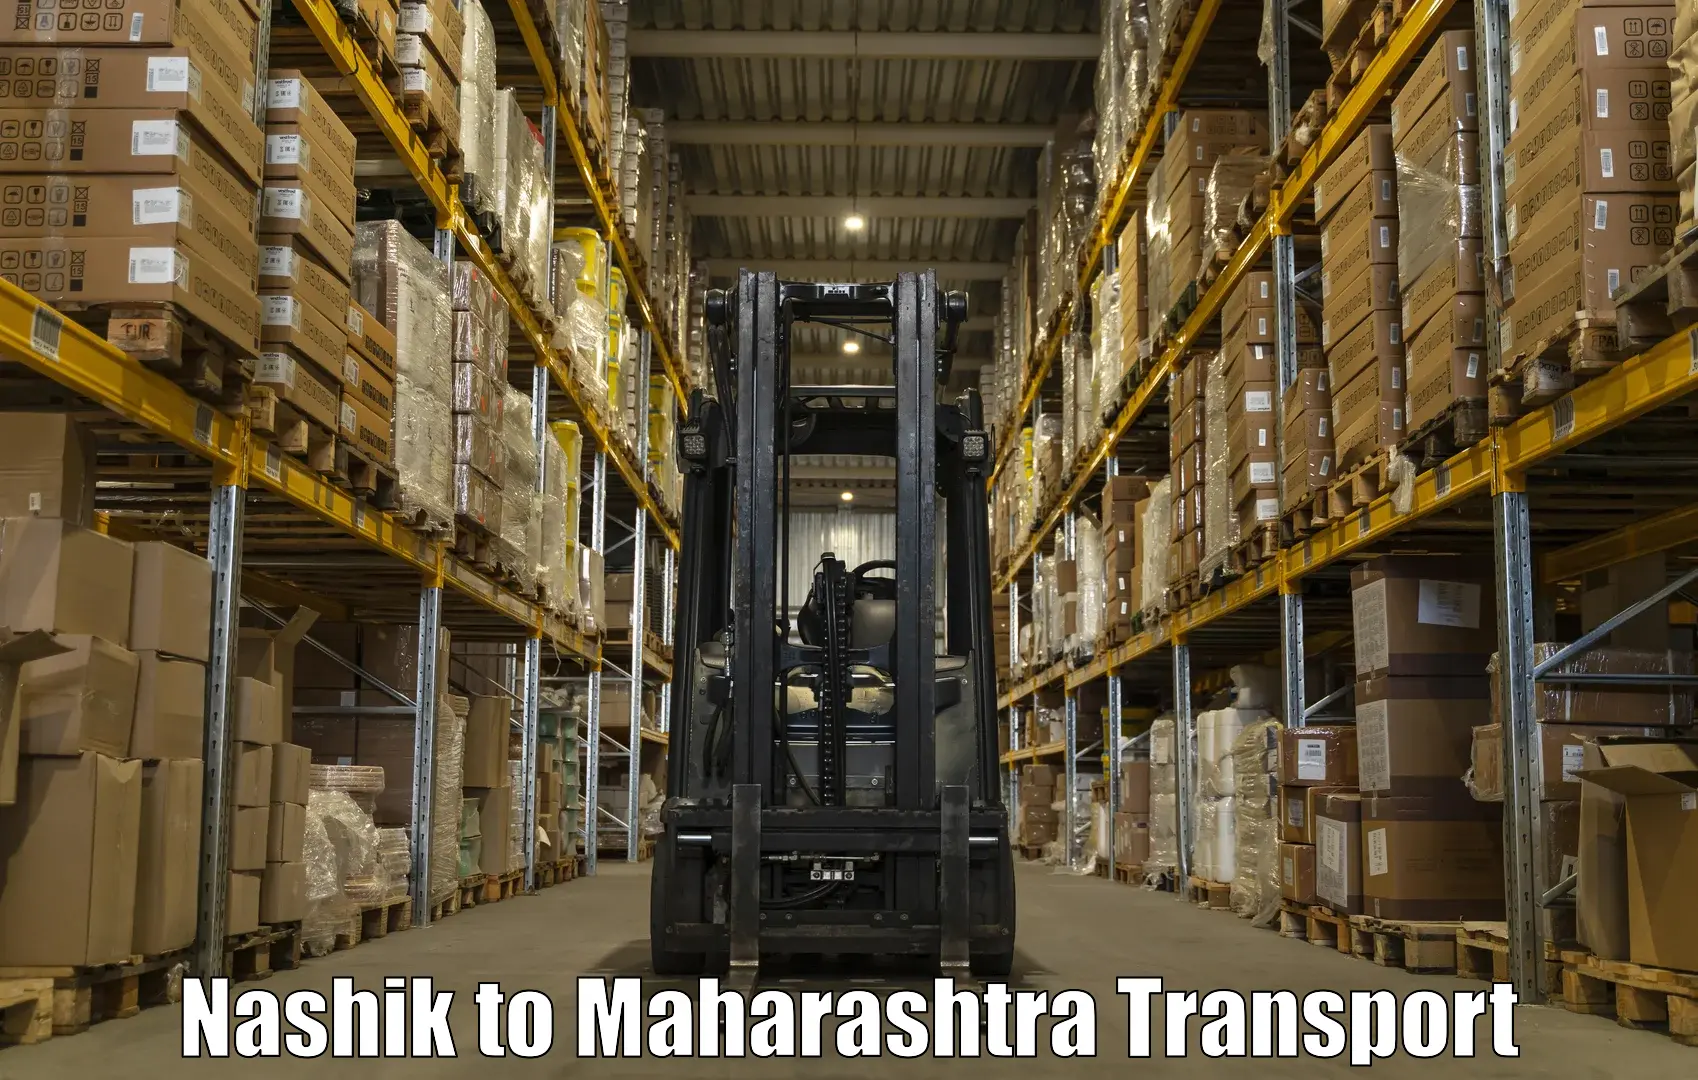 Parcel transport services Nashik to Kolhapur